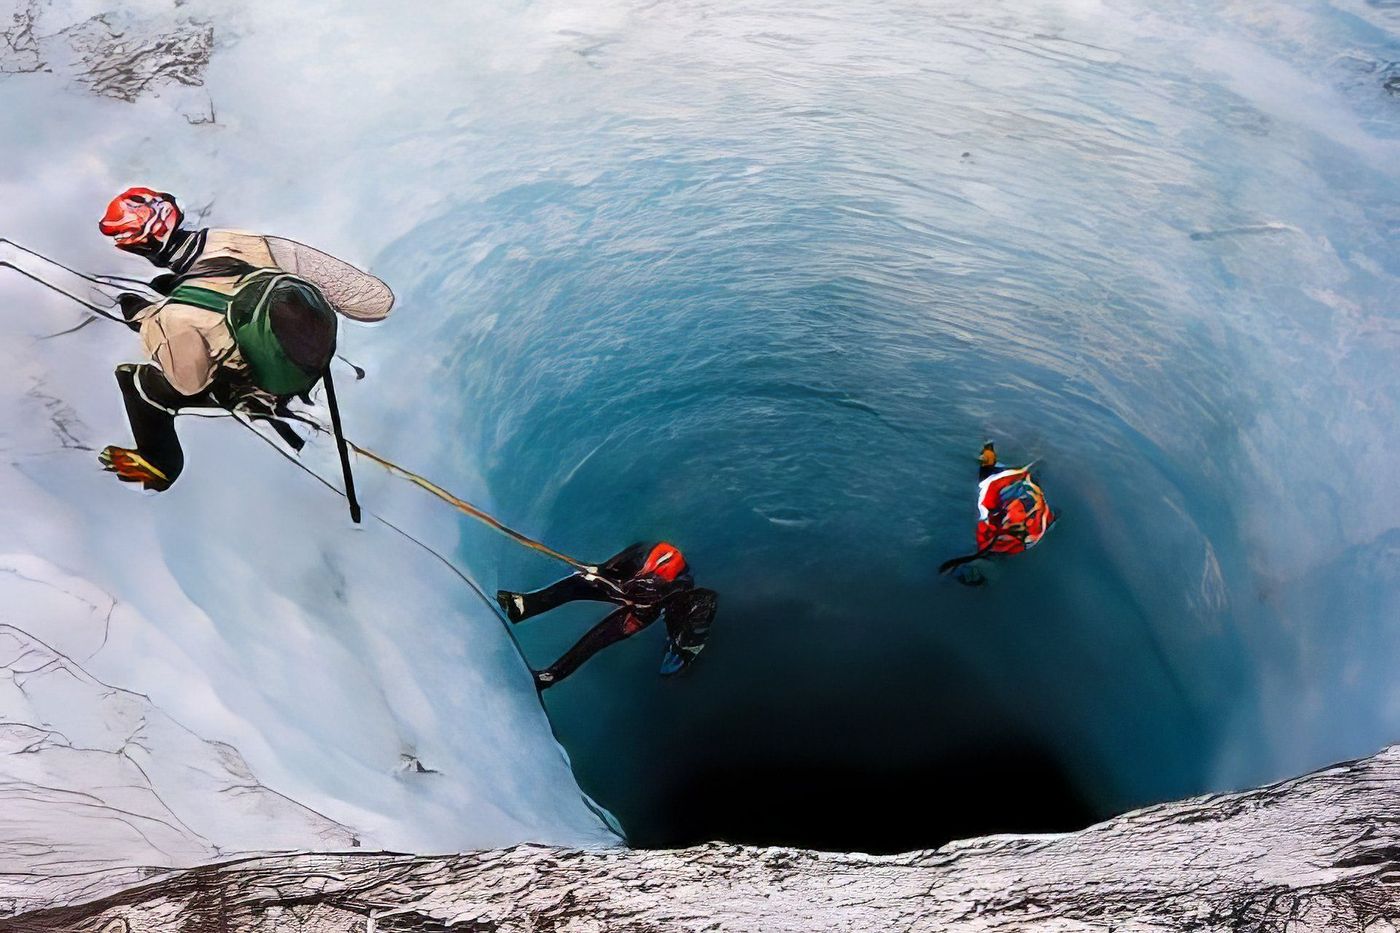 Un puits de glace en Islande